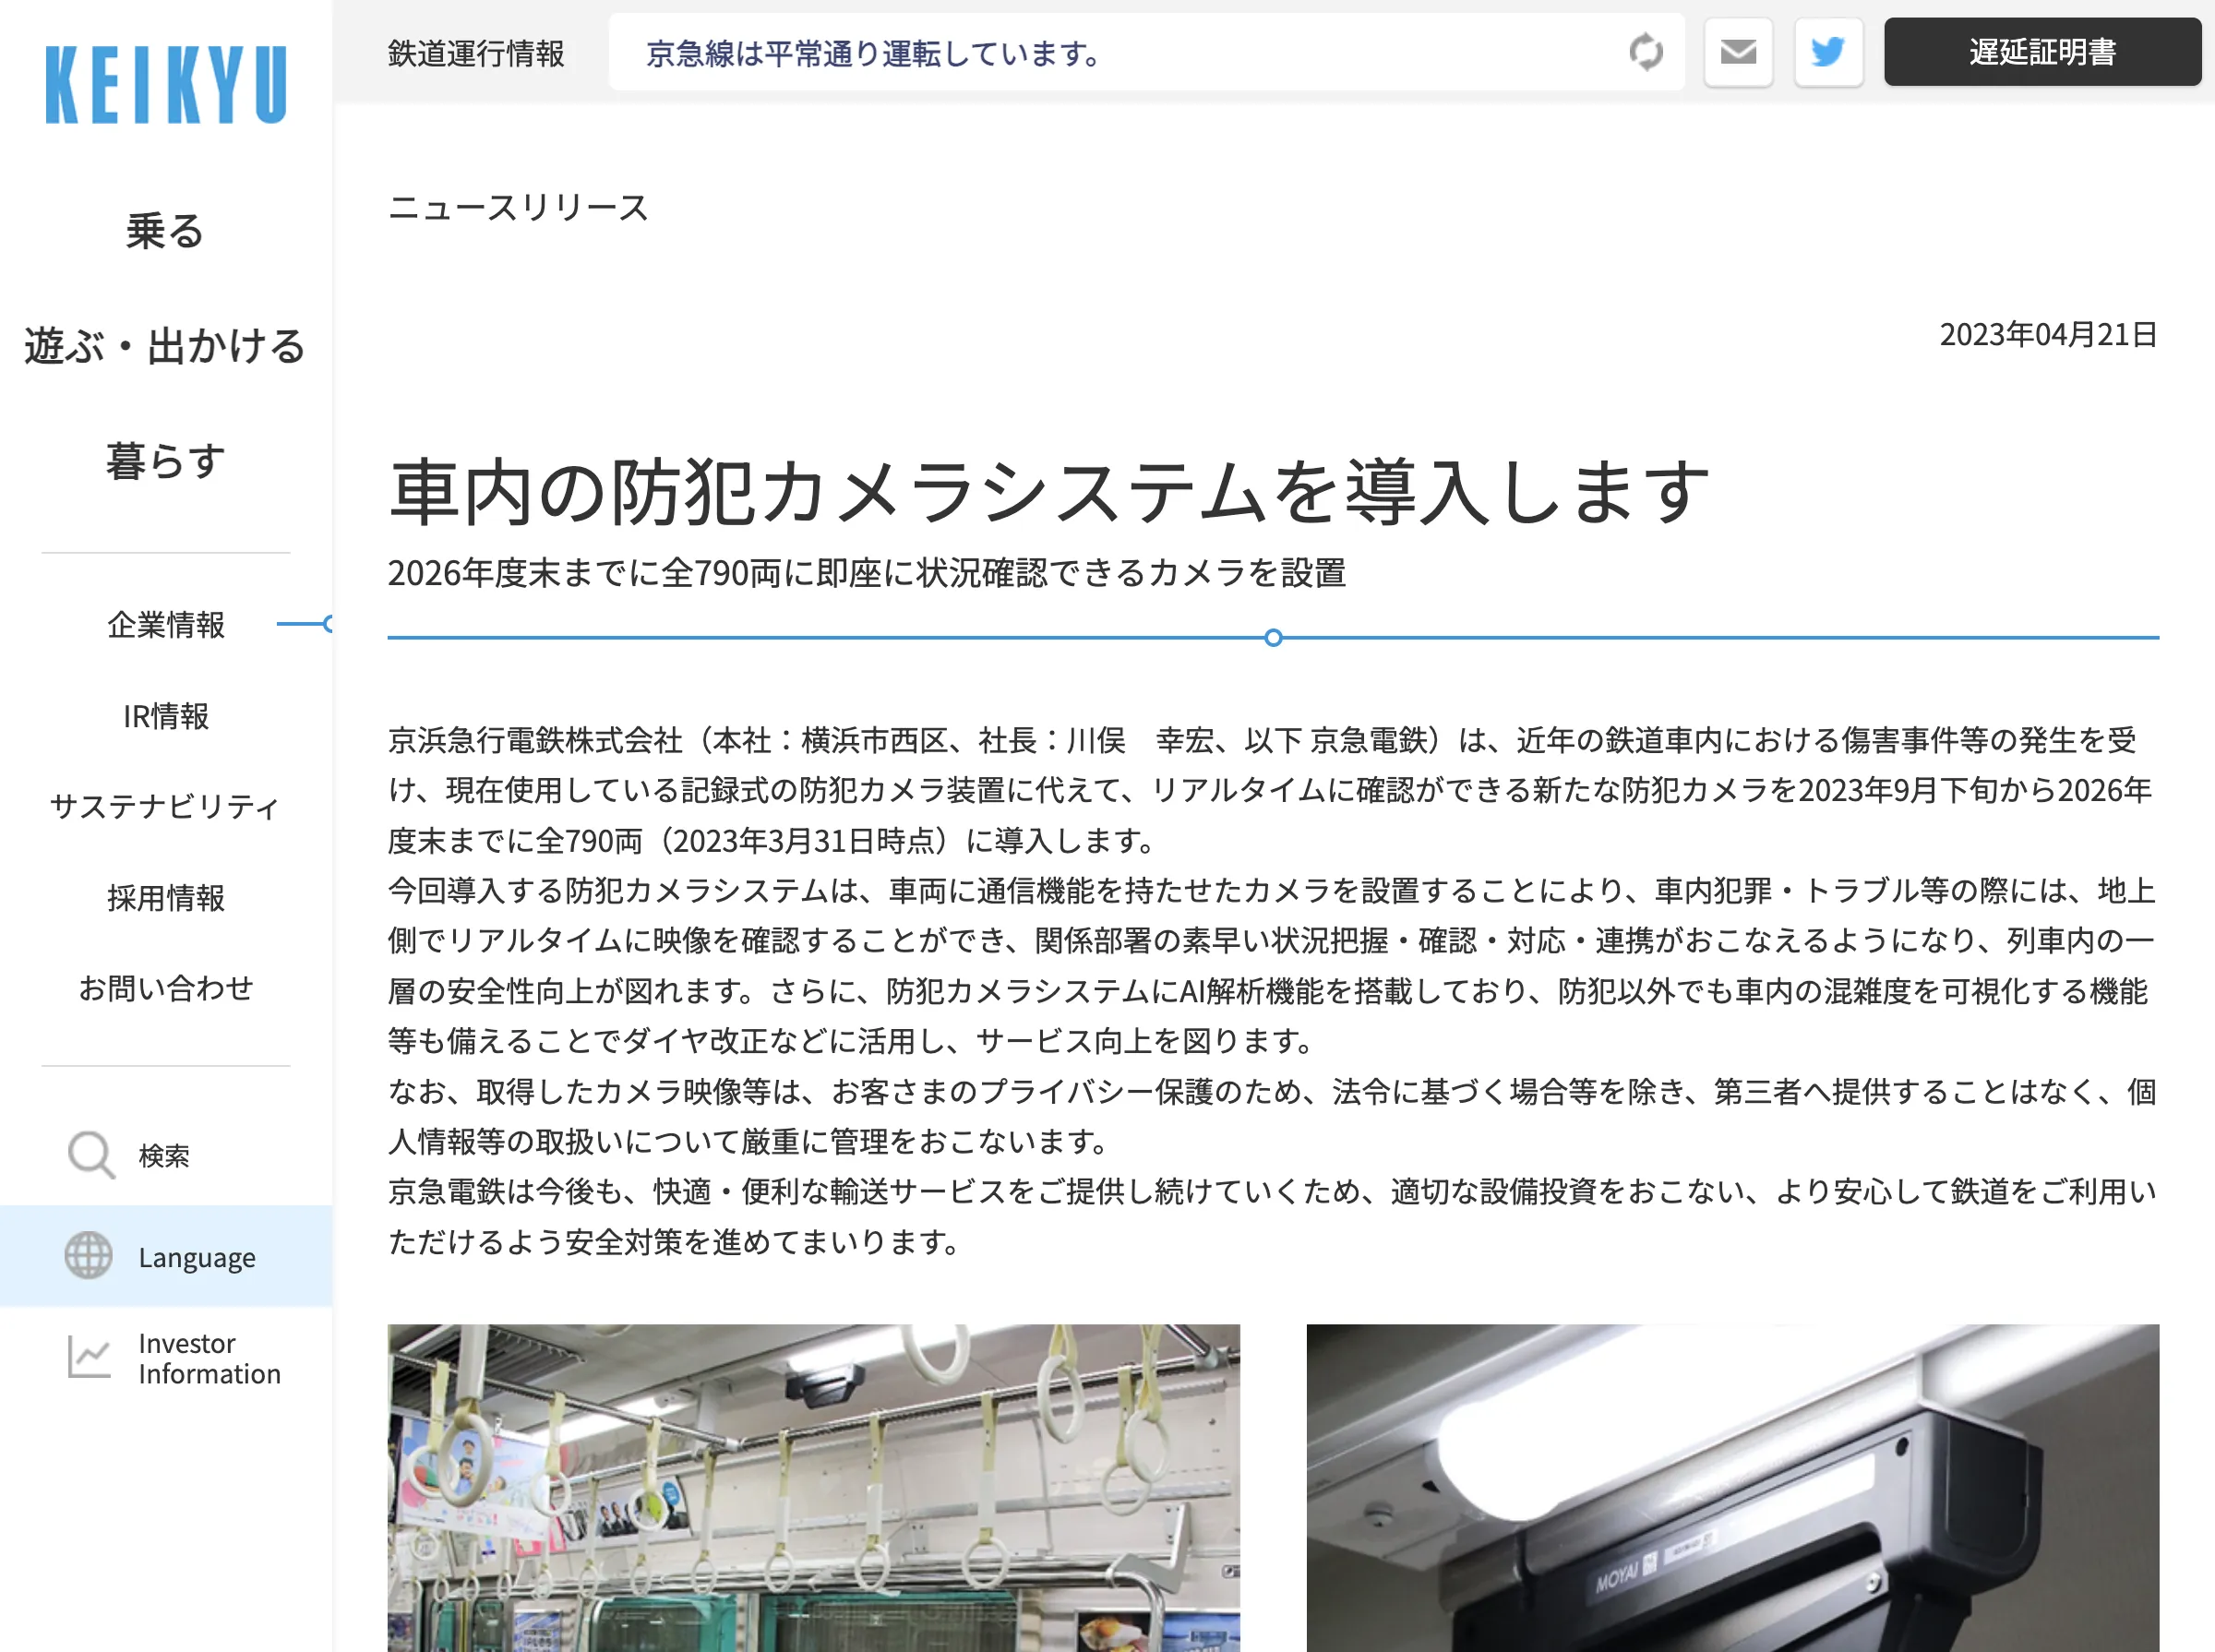 京急電鉄、2026年度末までに全790両にリアルタイム防犯カメラ導入へ